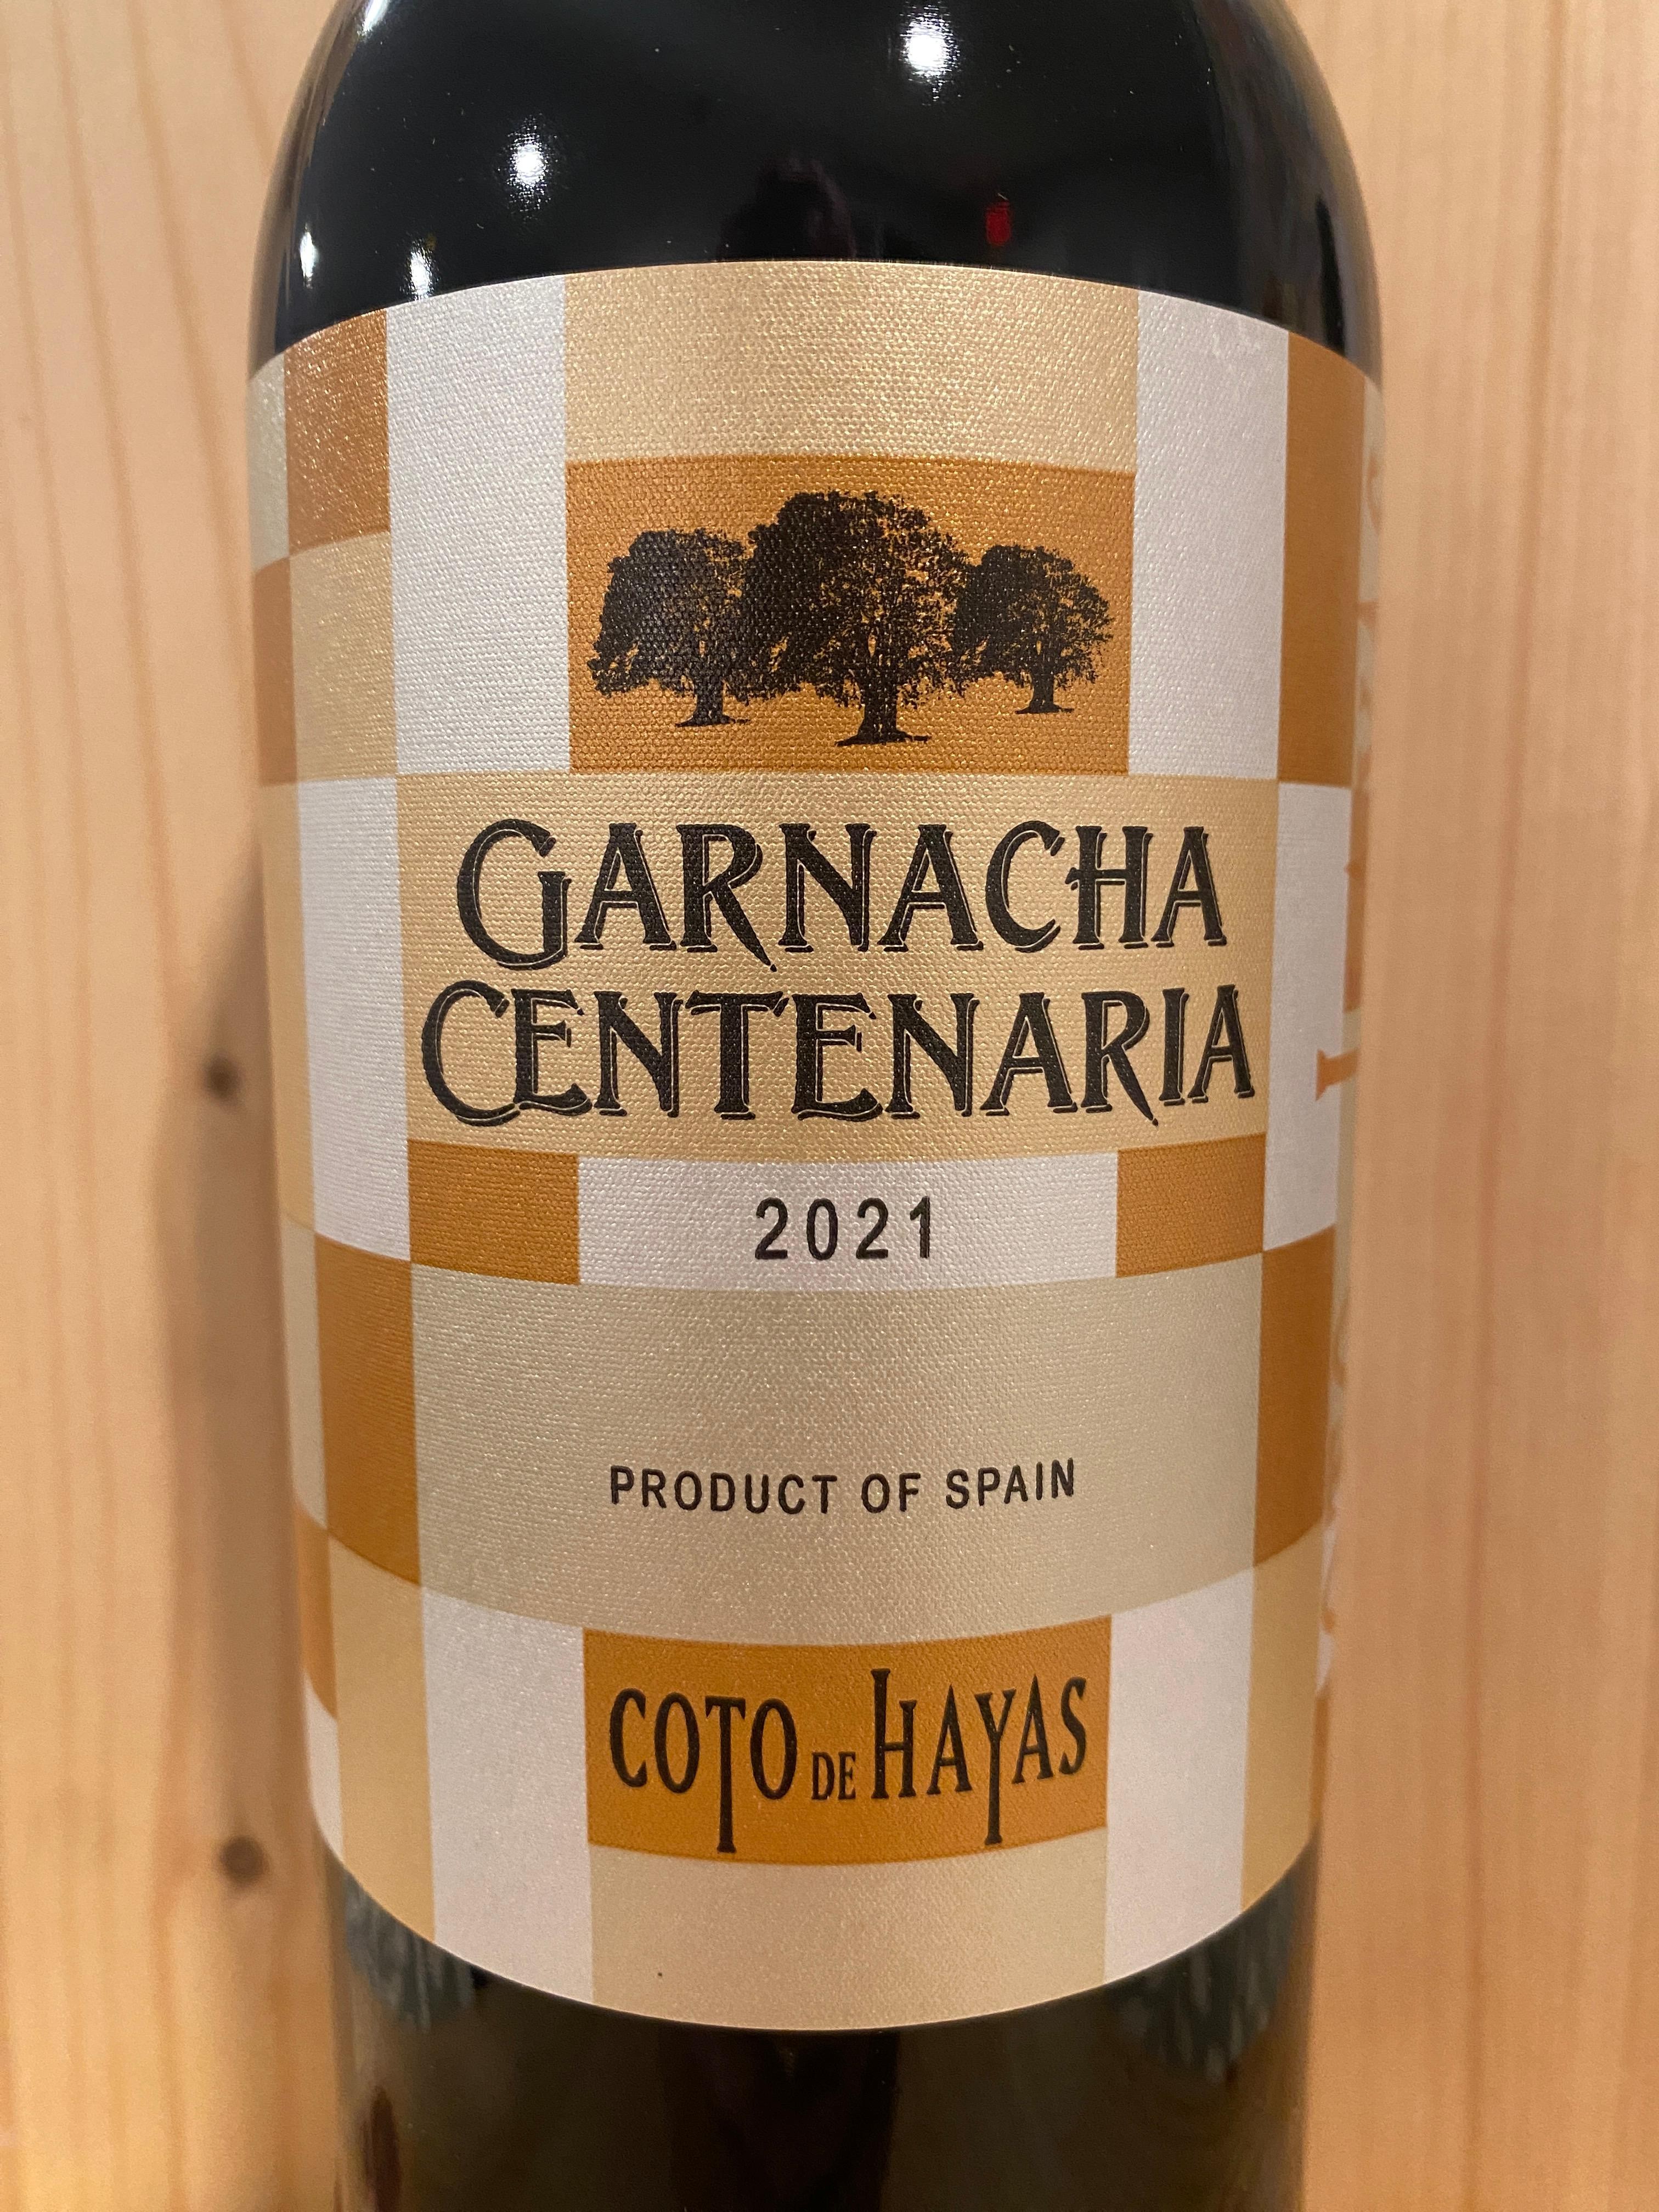 Coto de Hayas "Centenaria" Garnacha 2021: Campo de Borja, Spain